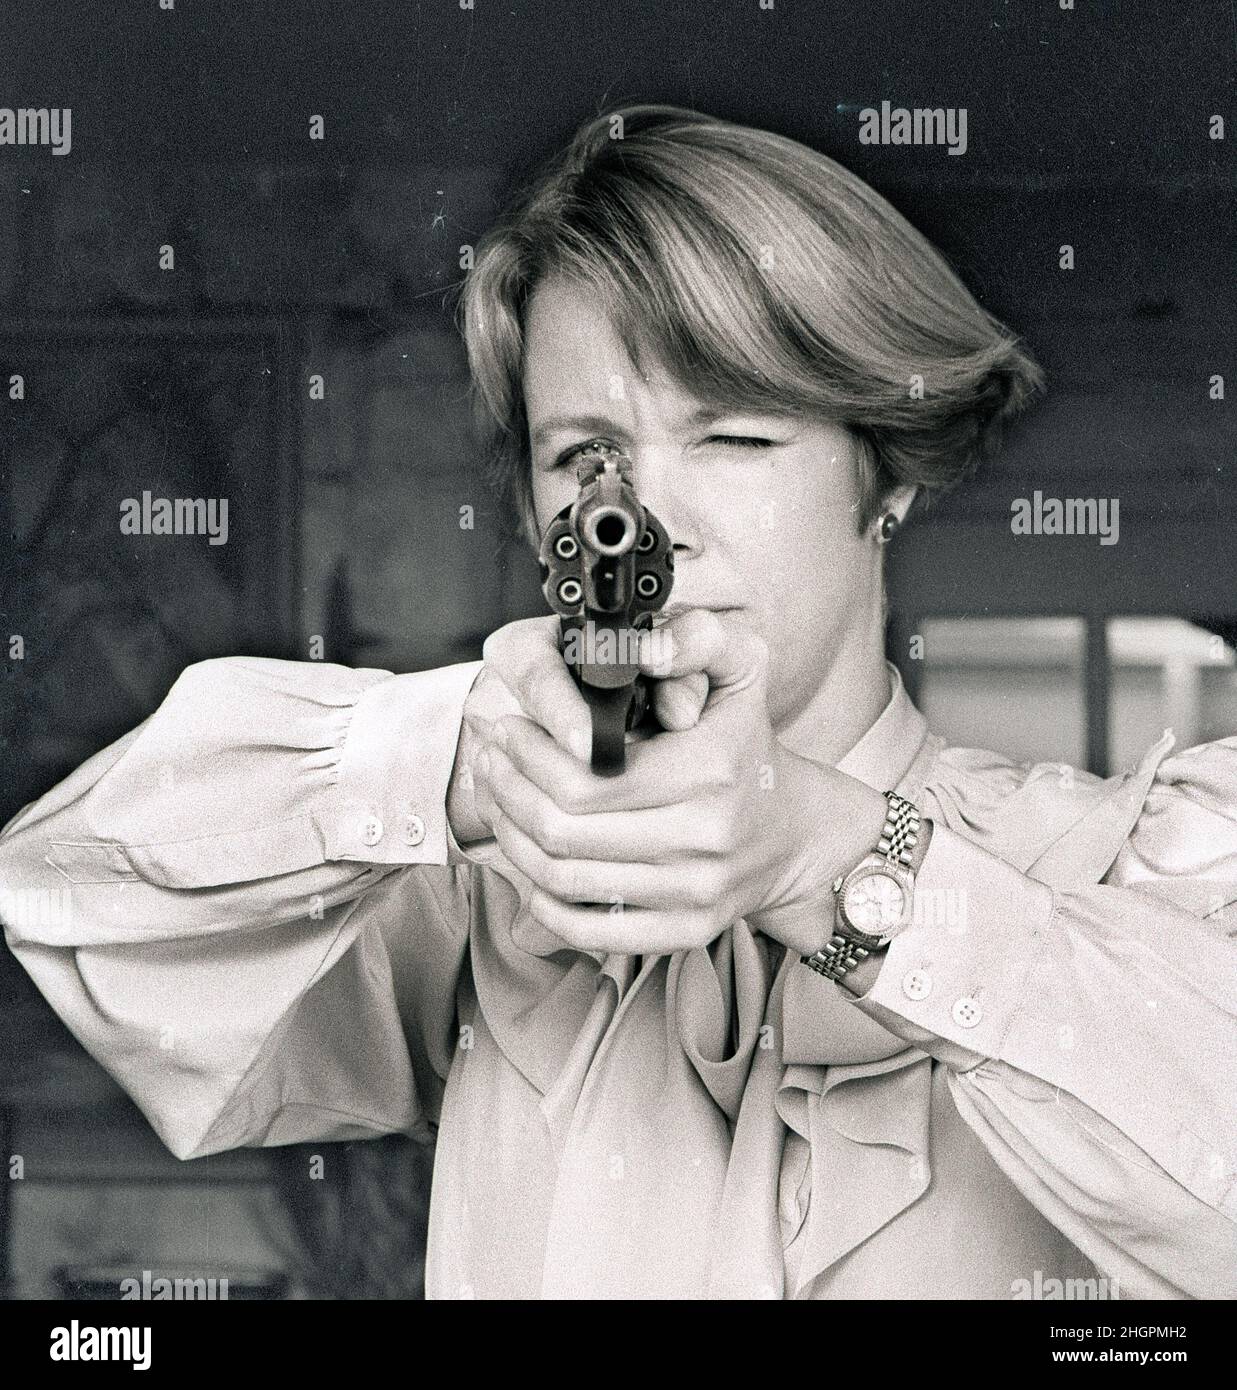 cheryl b zielt mit ihrer smith & wesson 357 Magnum Pistole, die sie zum Schutz für sich und ihre Familie hat. Foto war Titelseite auf der Sunday Boston Herald Ausgabe für eine Geschichte über Frauen, die sich in 1994 bewaffnen Foto von Bill belknap Stockfoto